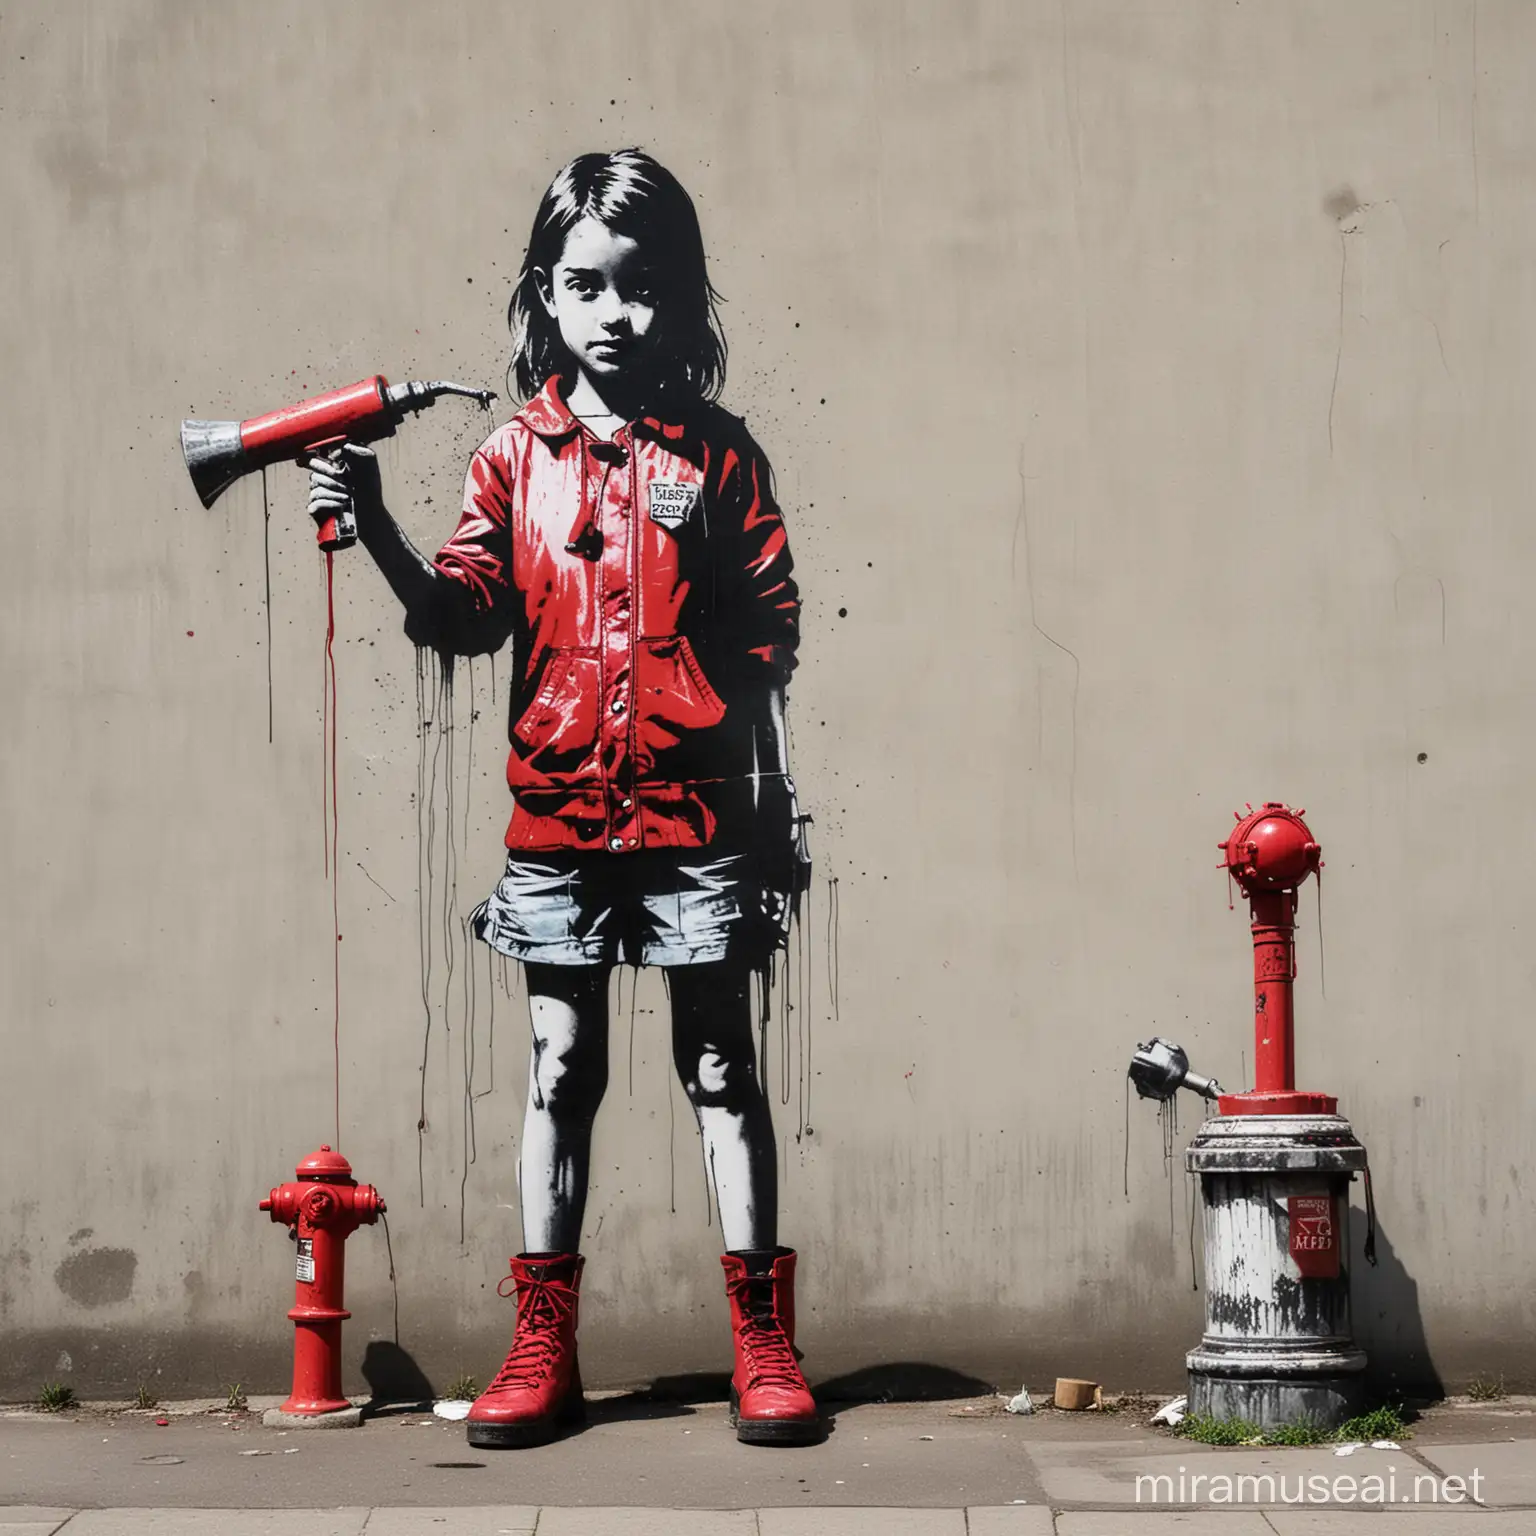 Naredi grafit u benksijevemu stilu, punčka naj ima v roki macolo in z njo hoče udariti po hidrantu
